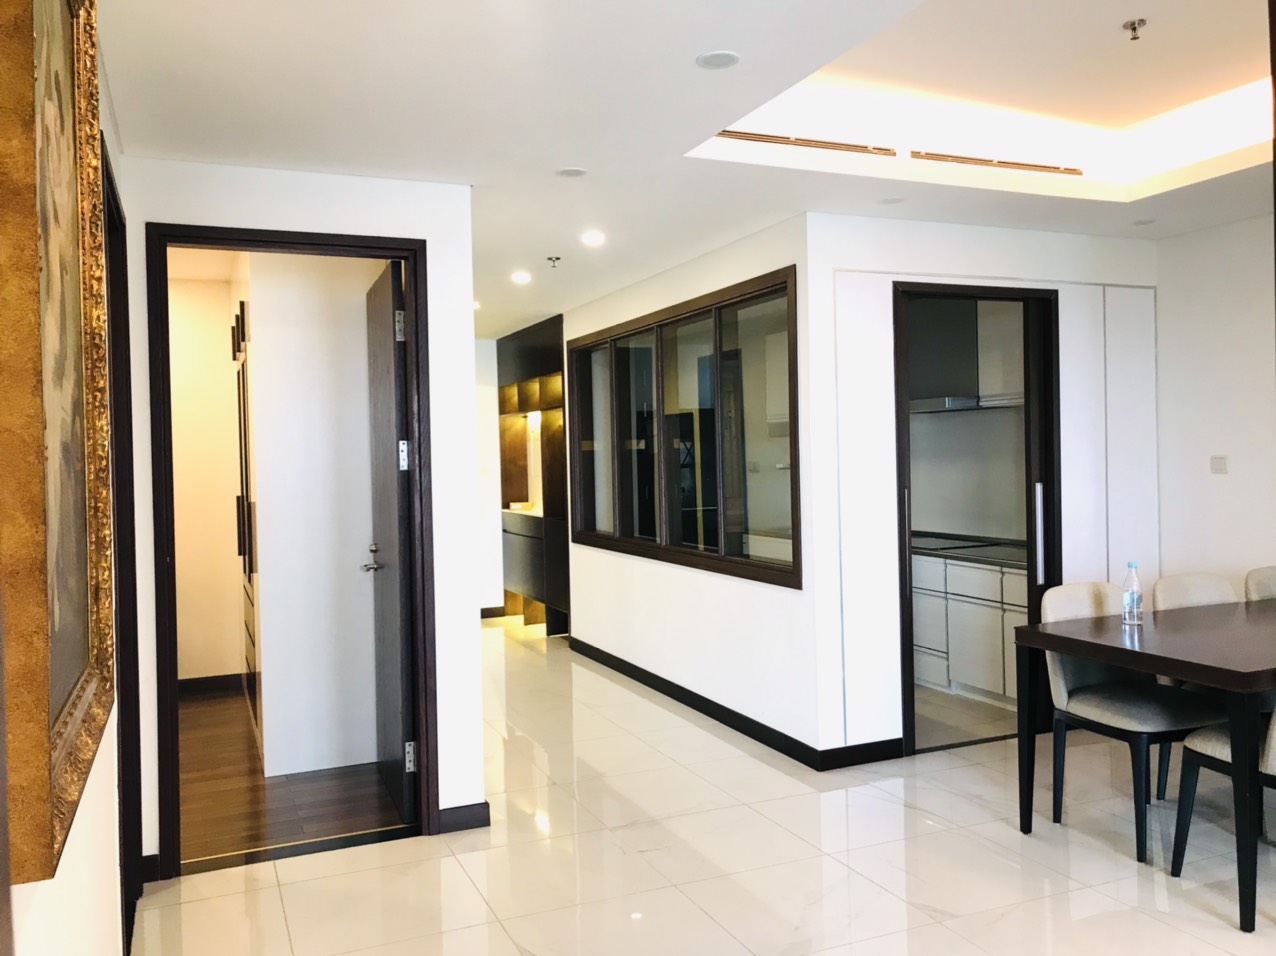 Báo giá các căn hộ cho thuê tại chung cư cao cấp Hà Nội Aqua Central 44 Yên Phụ. LH 0969866063 955891